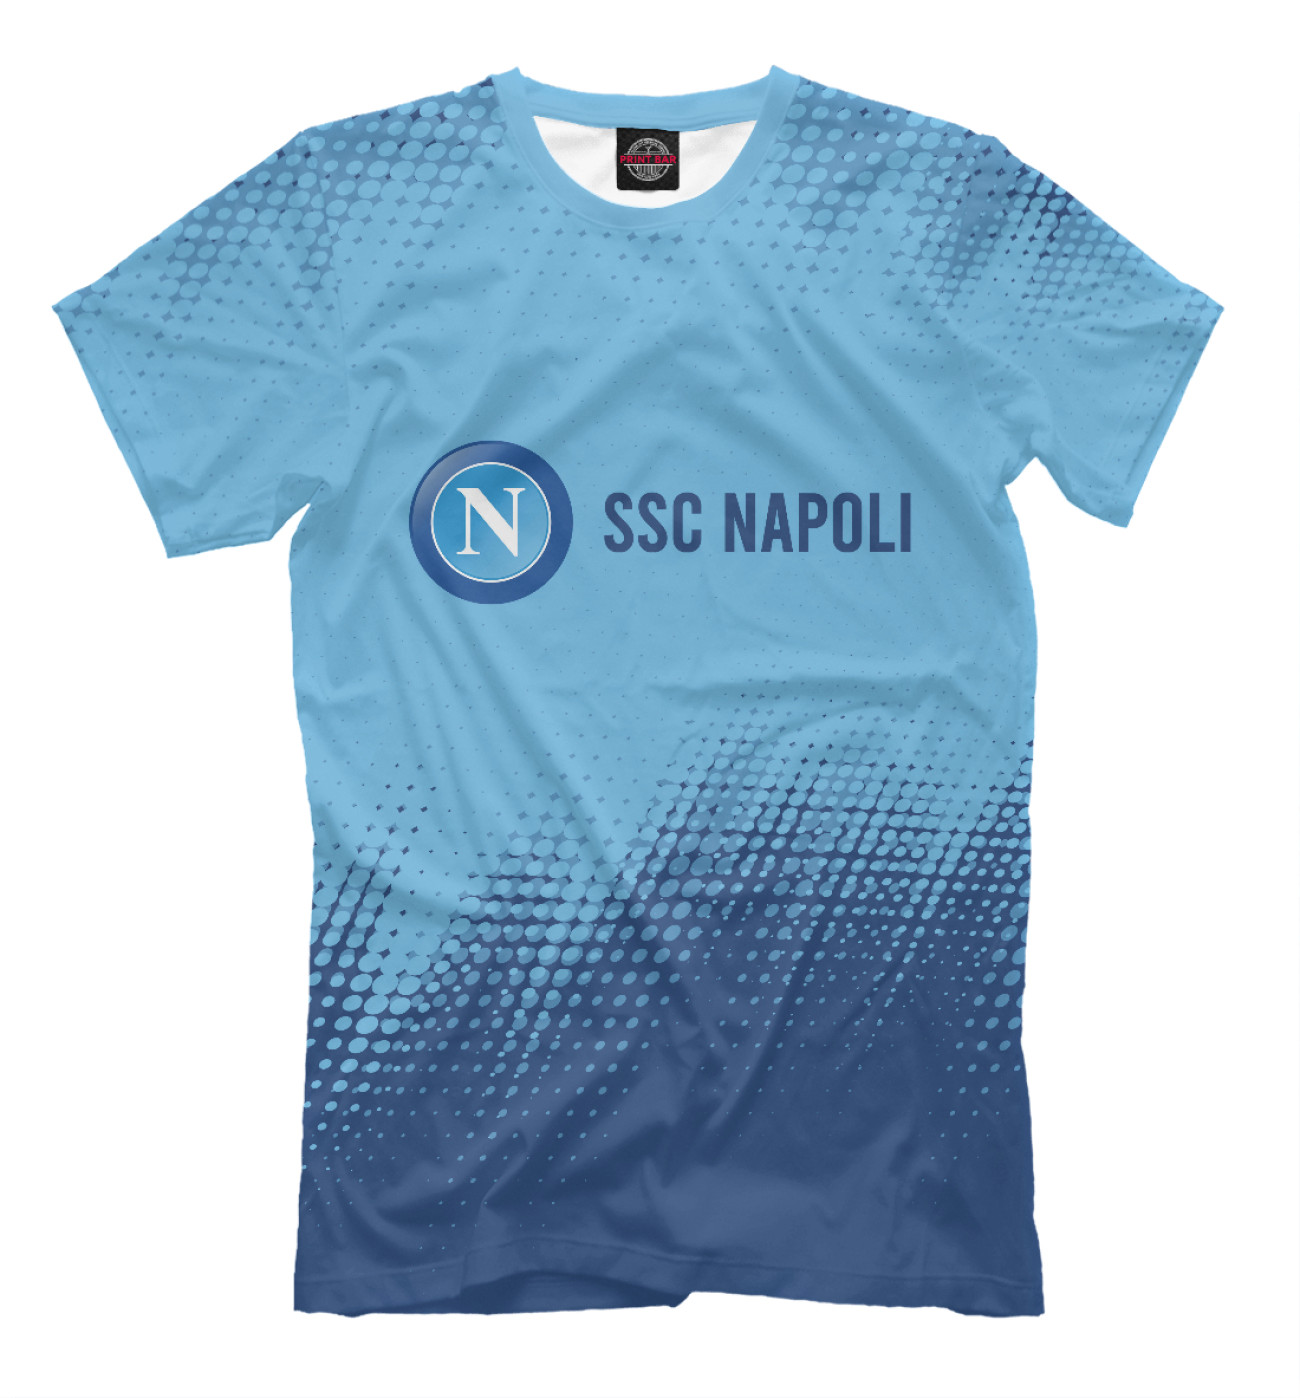 Мужская Футболка SSC Napoli / Наполи, артикул: NPL-355016-fut-2